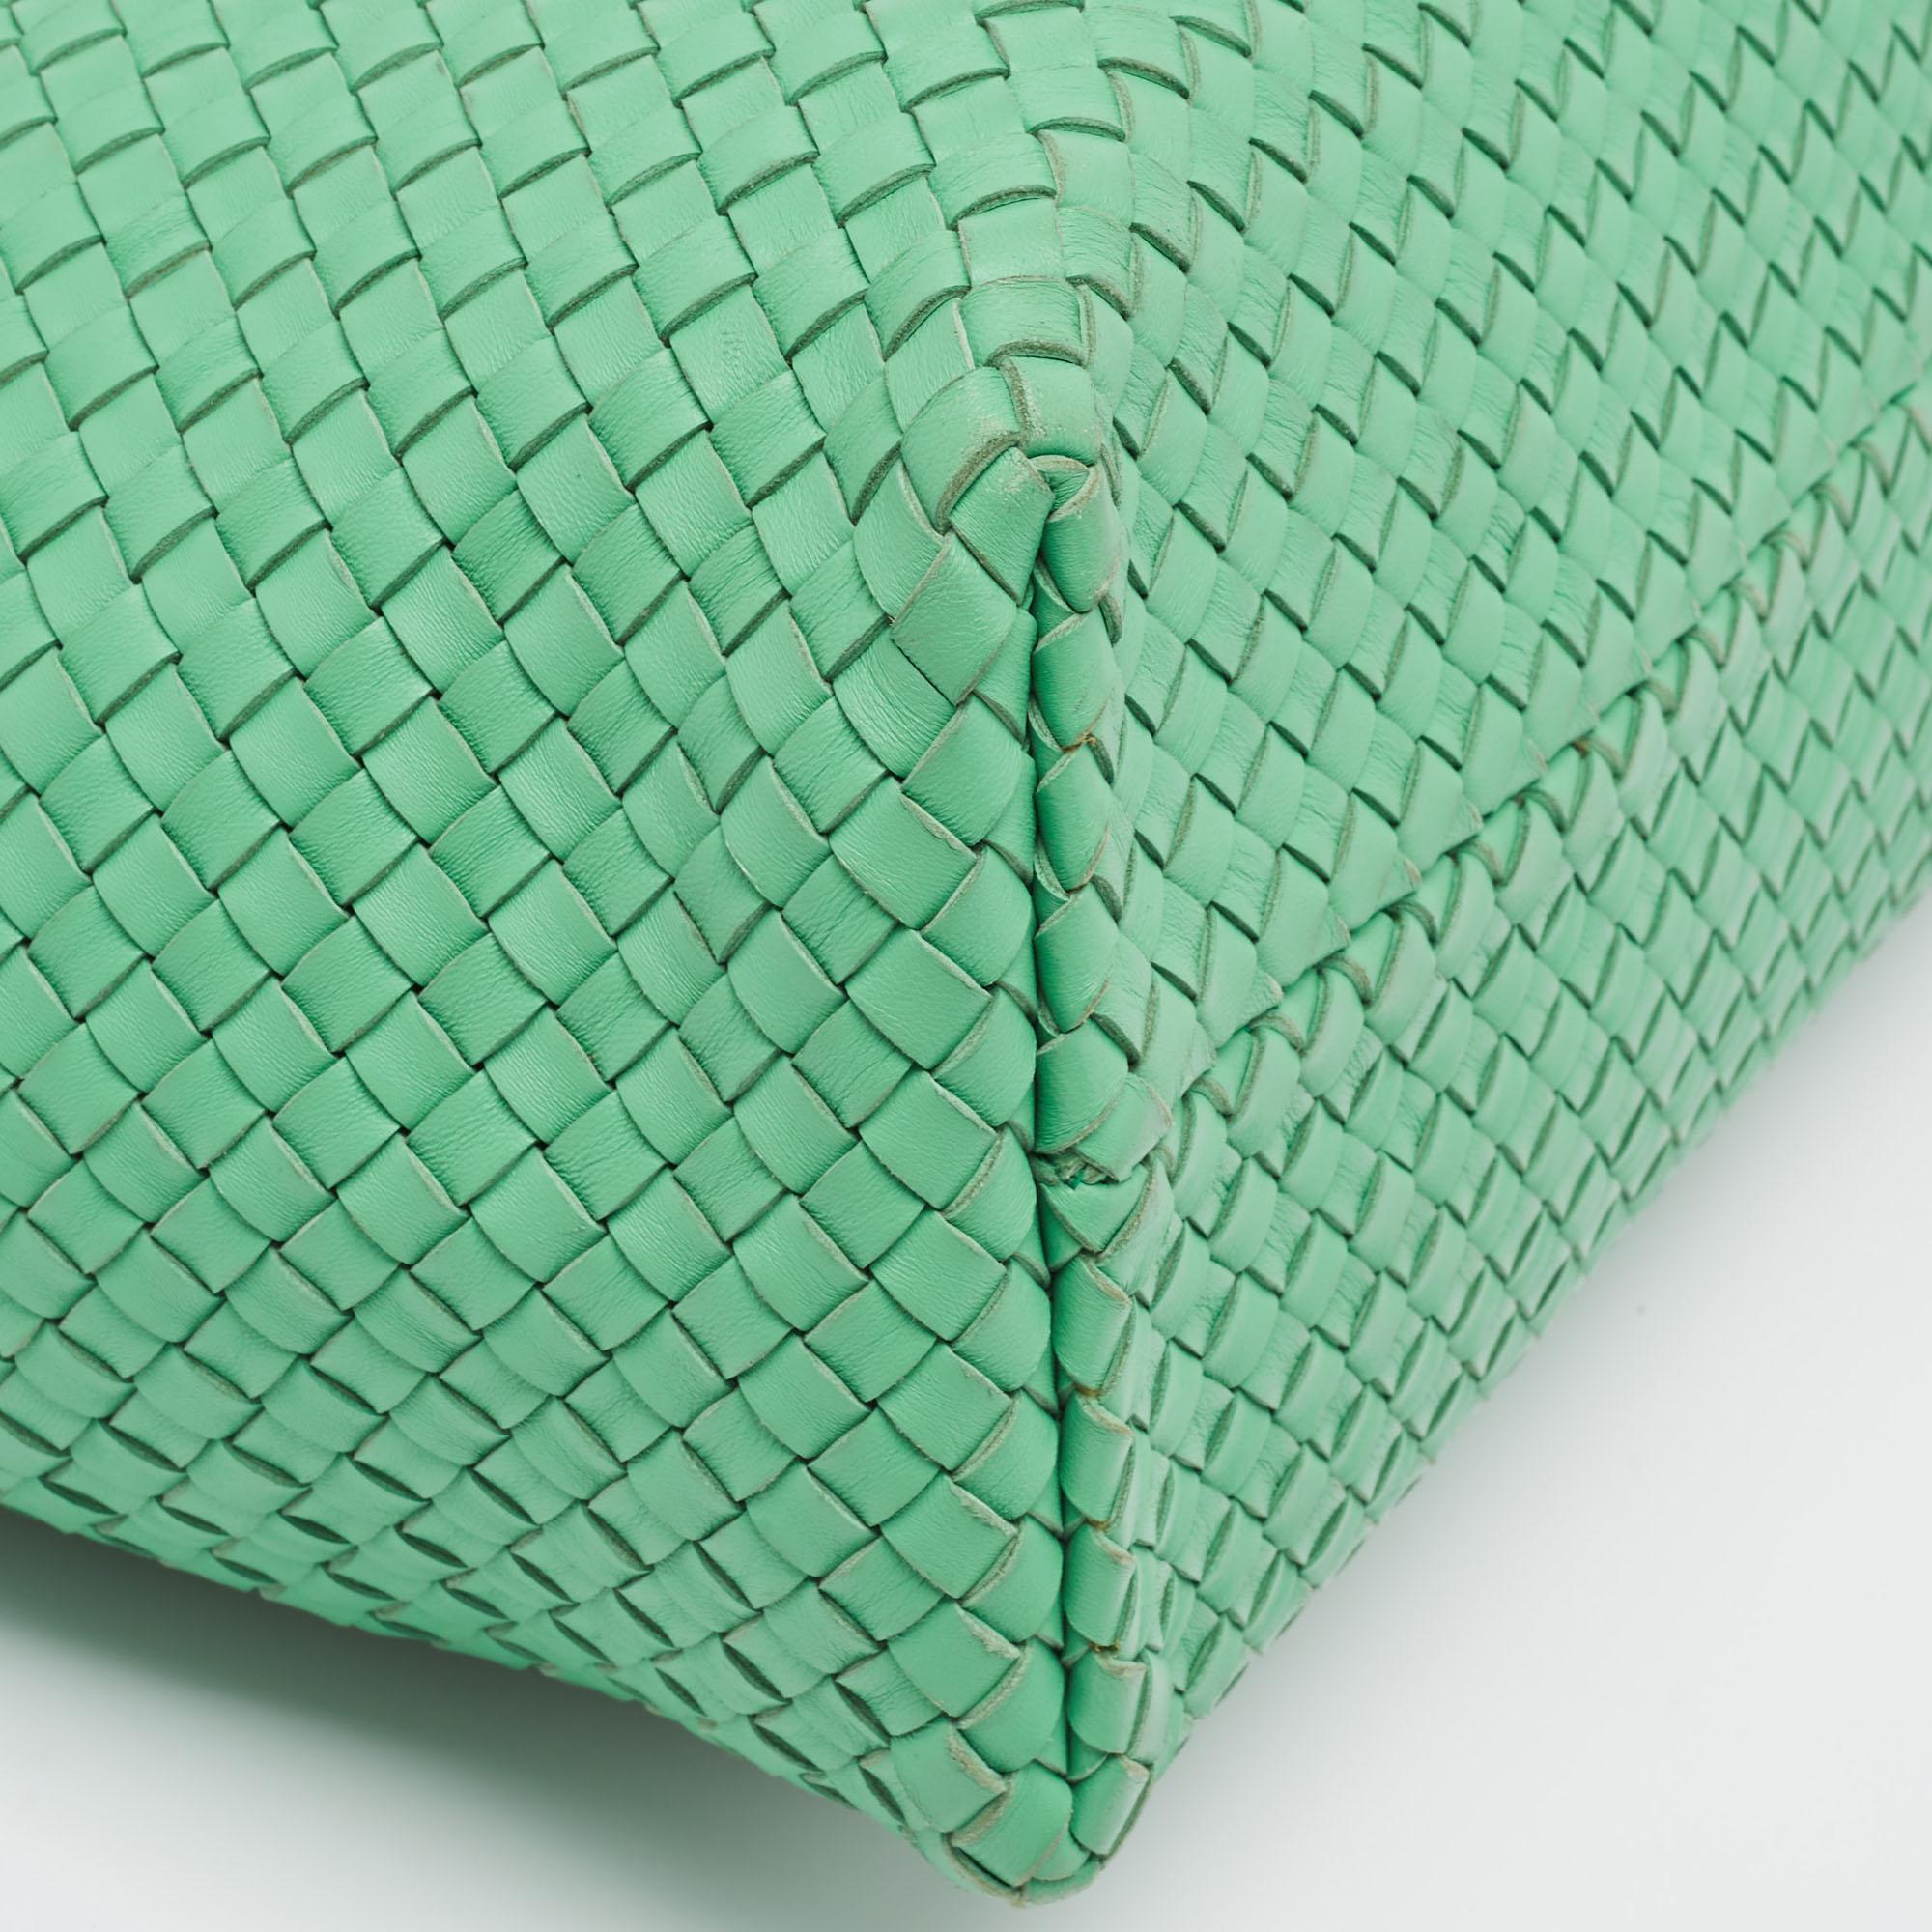 Bottega Veneta Green Intrecciato Leather  Limited Edition 0147/1000 Cabat Tote For Sale 1